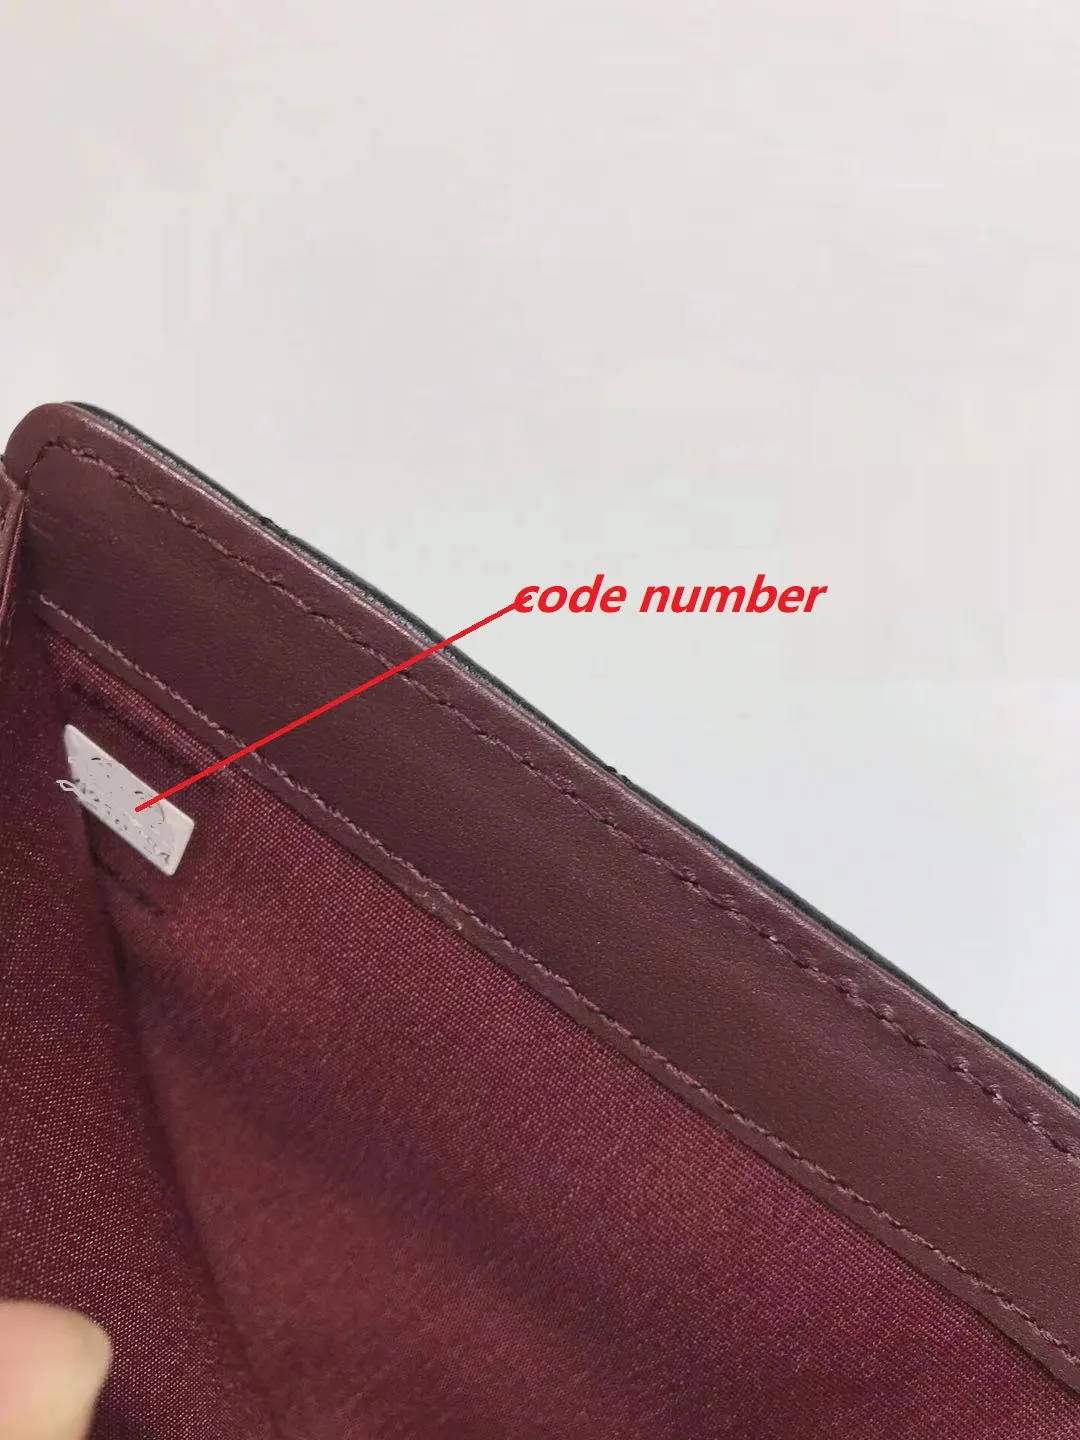 Designer Passaporto Copertina di copertura del portafoglio di alta qualità Porta del portafoglio di top di alta qualità Coperture borsa donne in pelle vera passaporti con scatola D301x